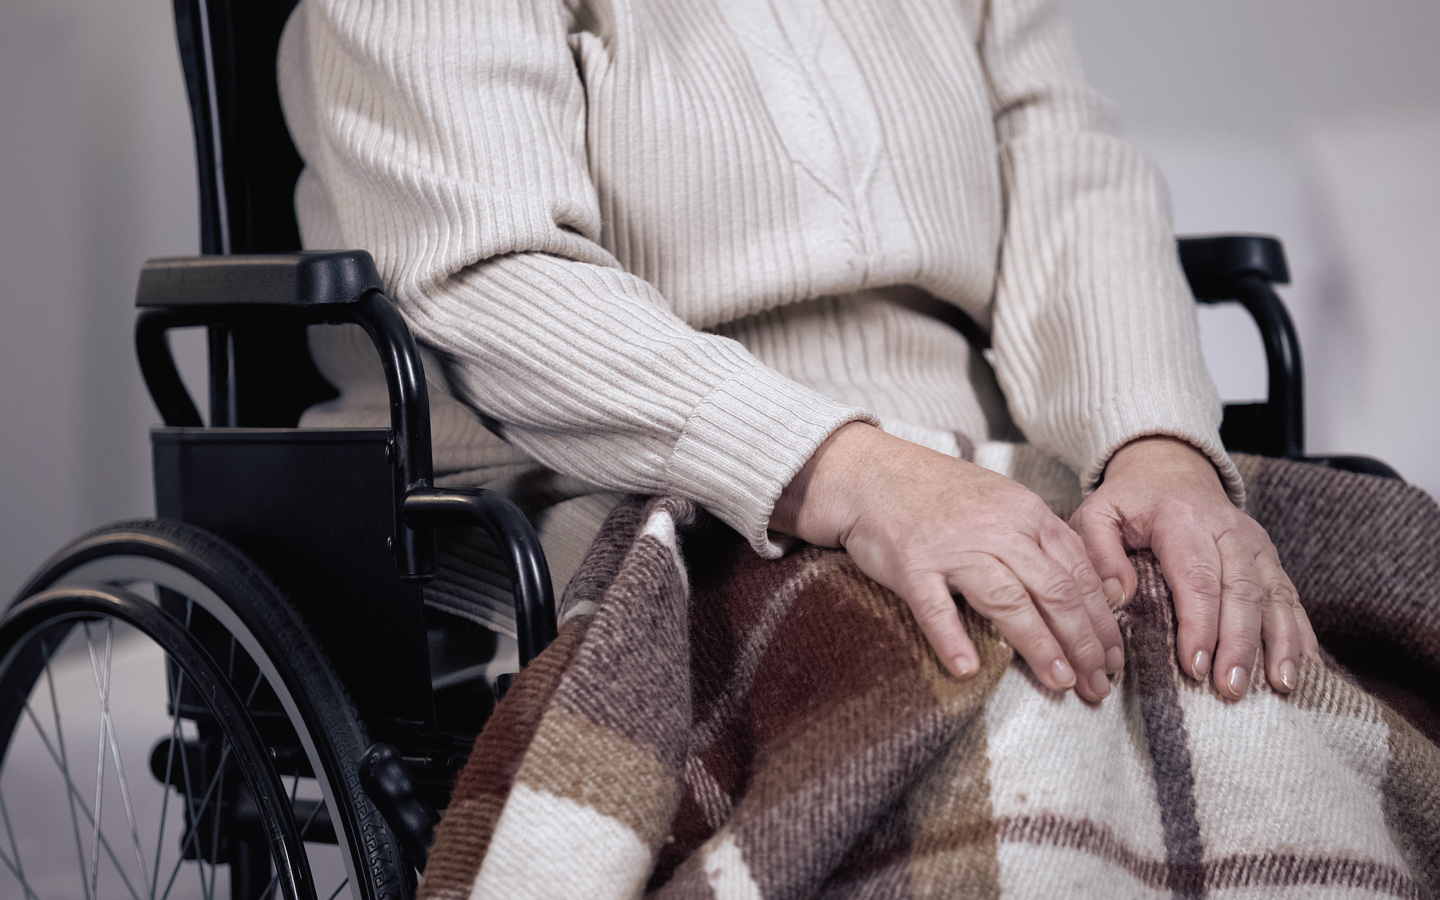 Auf dem Bild sieht man eine angezogene Person im Rollstuhl mit einem hellen Pullover und einer Wolldecke über den Knien. Offenbar wartet sie.